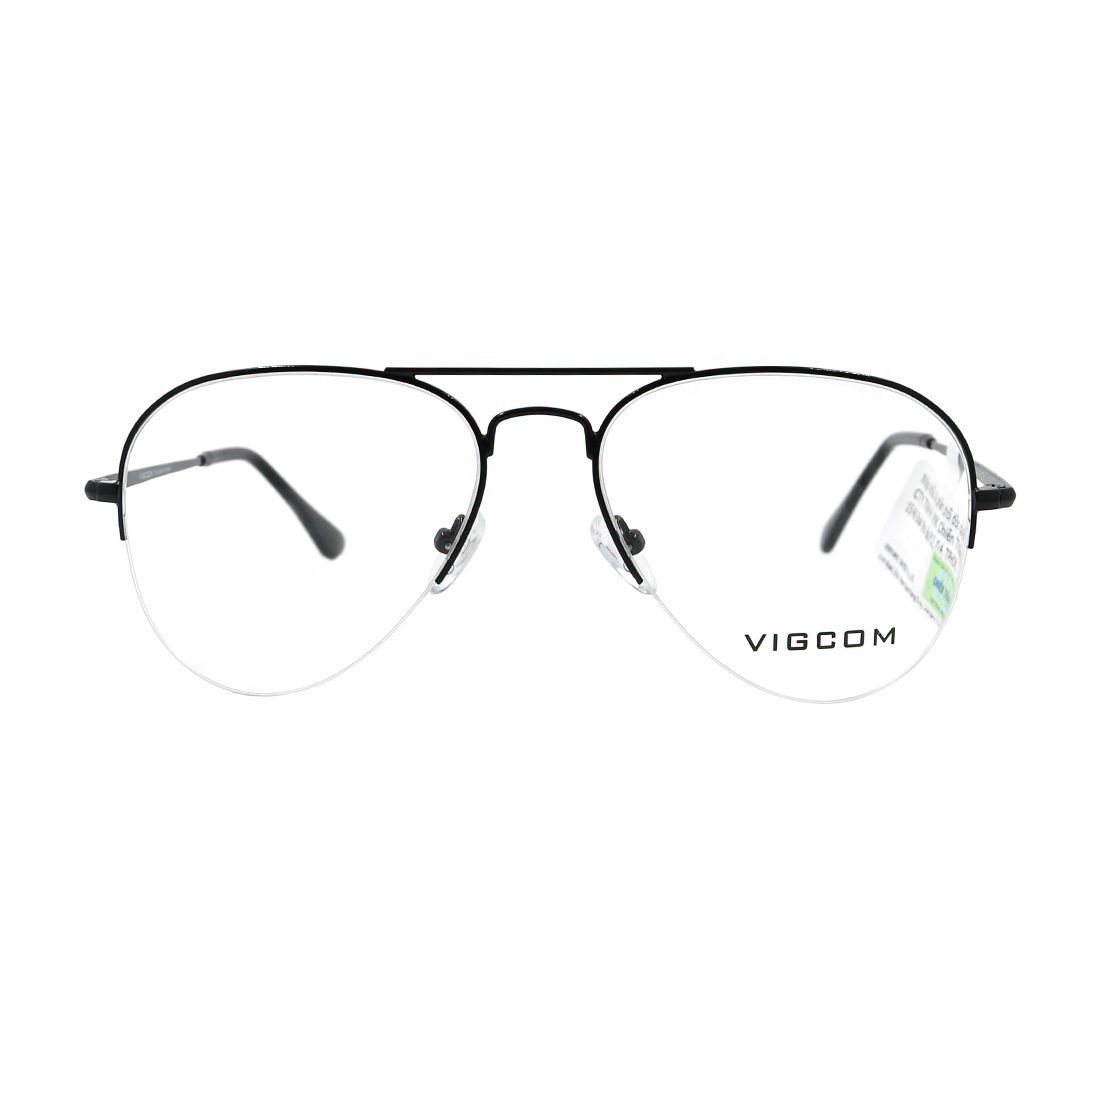  Gọng kính Vigcom VG2054 C5 